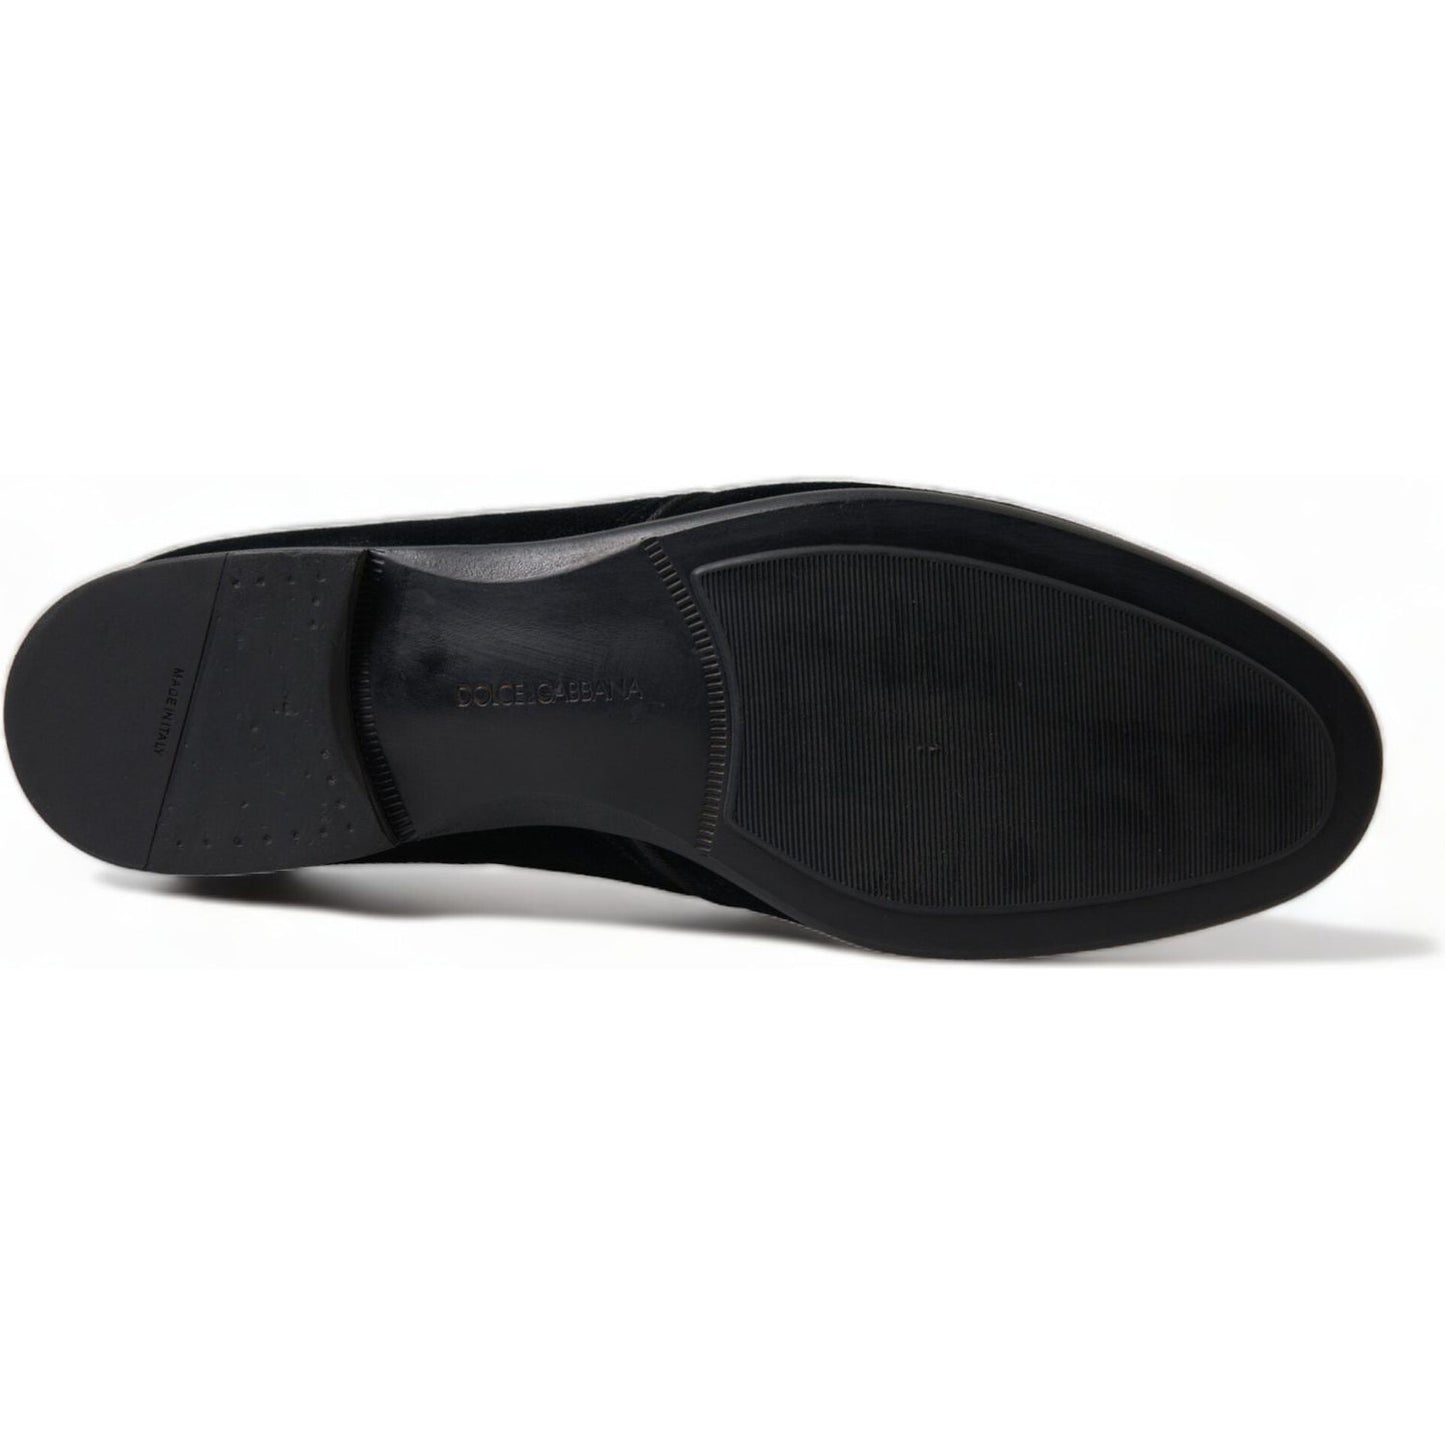 Dolce & Gabbana Elegant Black Velvet Derby Dress Shoes black-velvet-lace-up-formal-derby-dress-shoes 465A1264-bg-scaled-f7b0aaad-e62.jpg